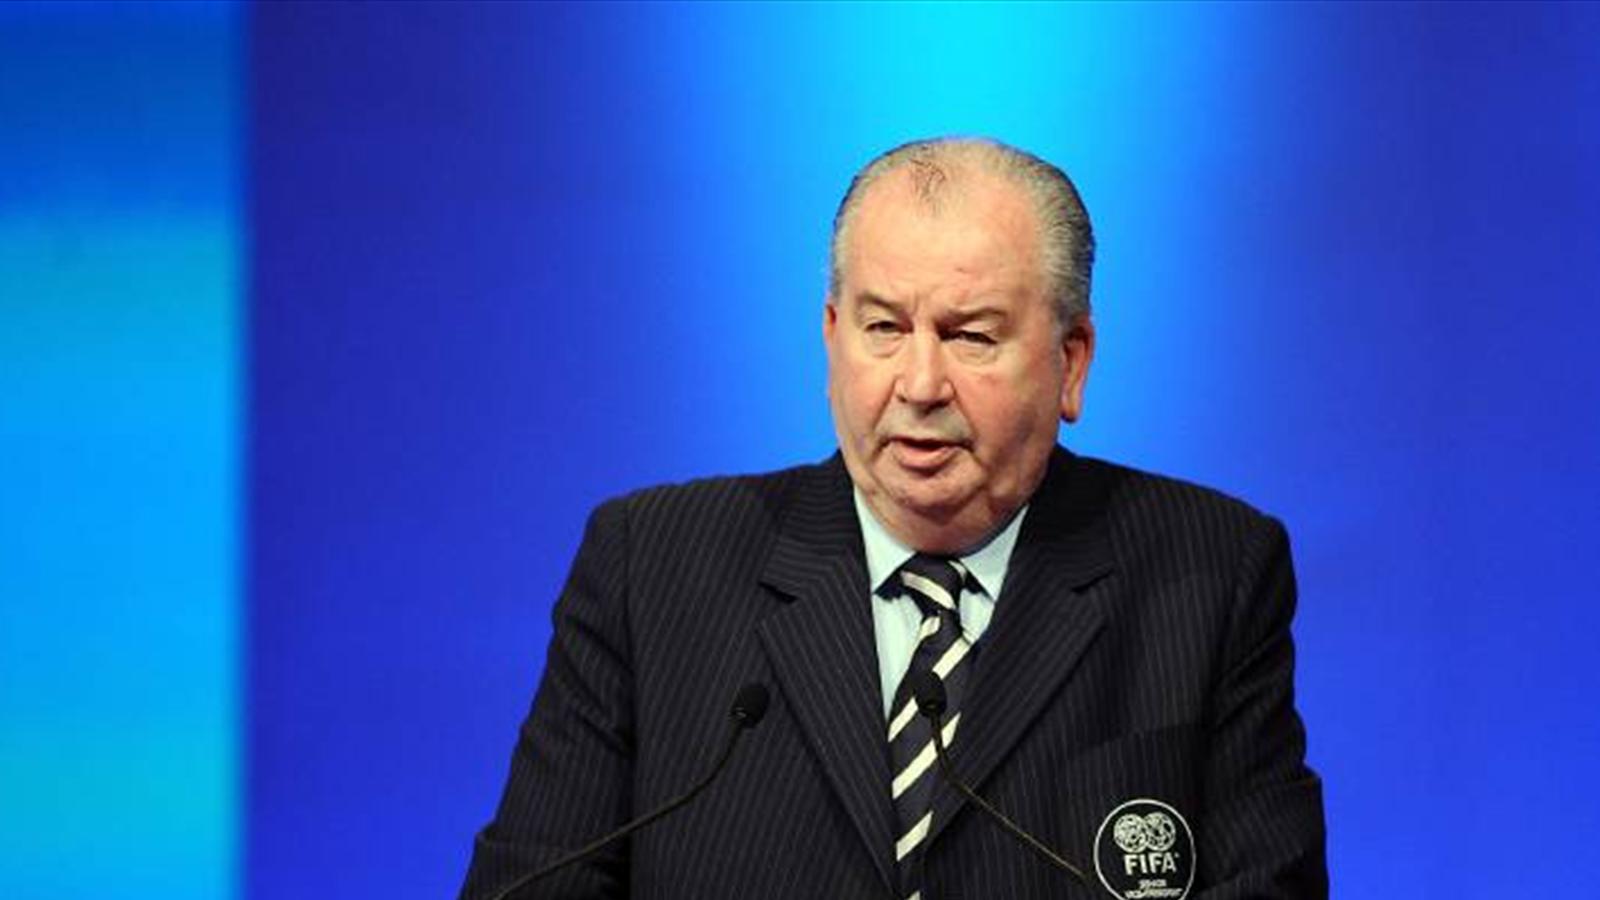 El ex presidente de AFA y vice de FIFA no queda bien parado en la serie "El presidente".